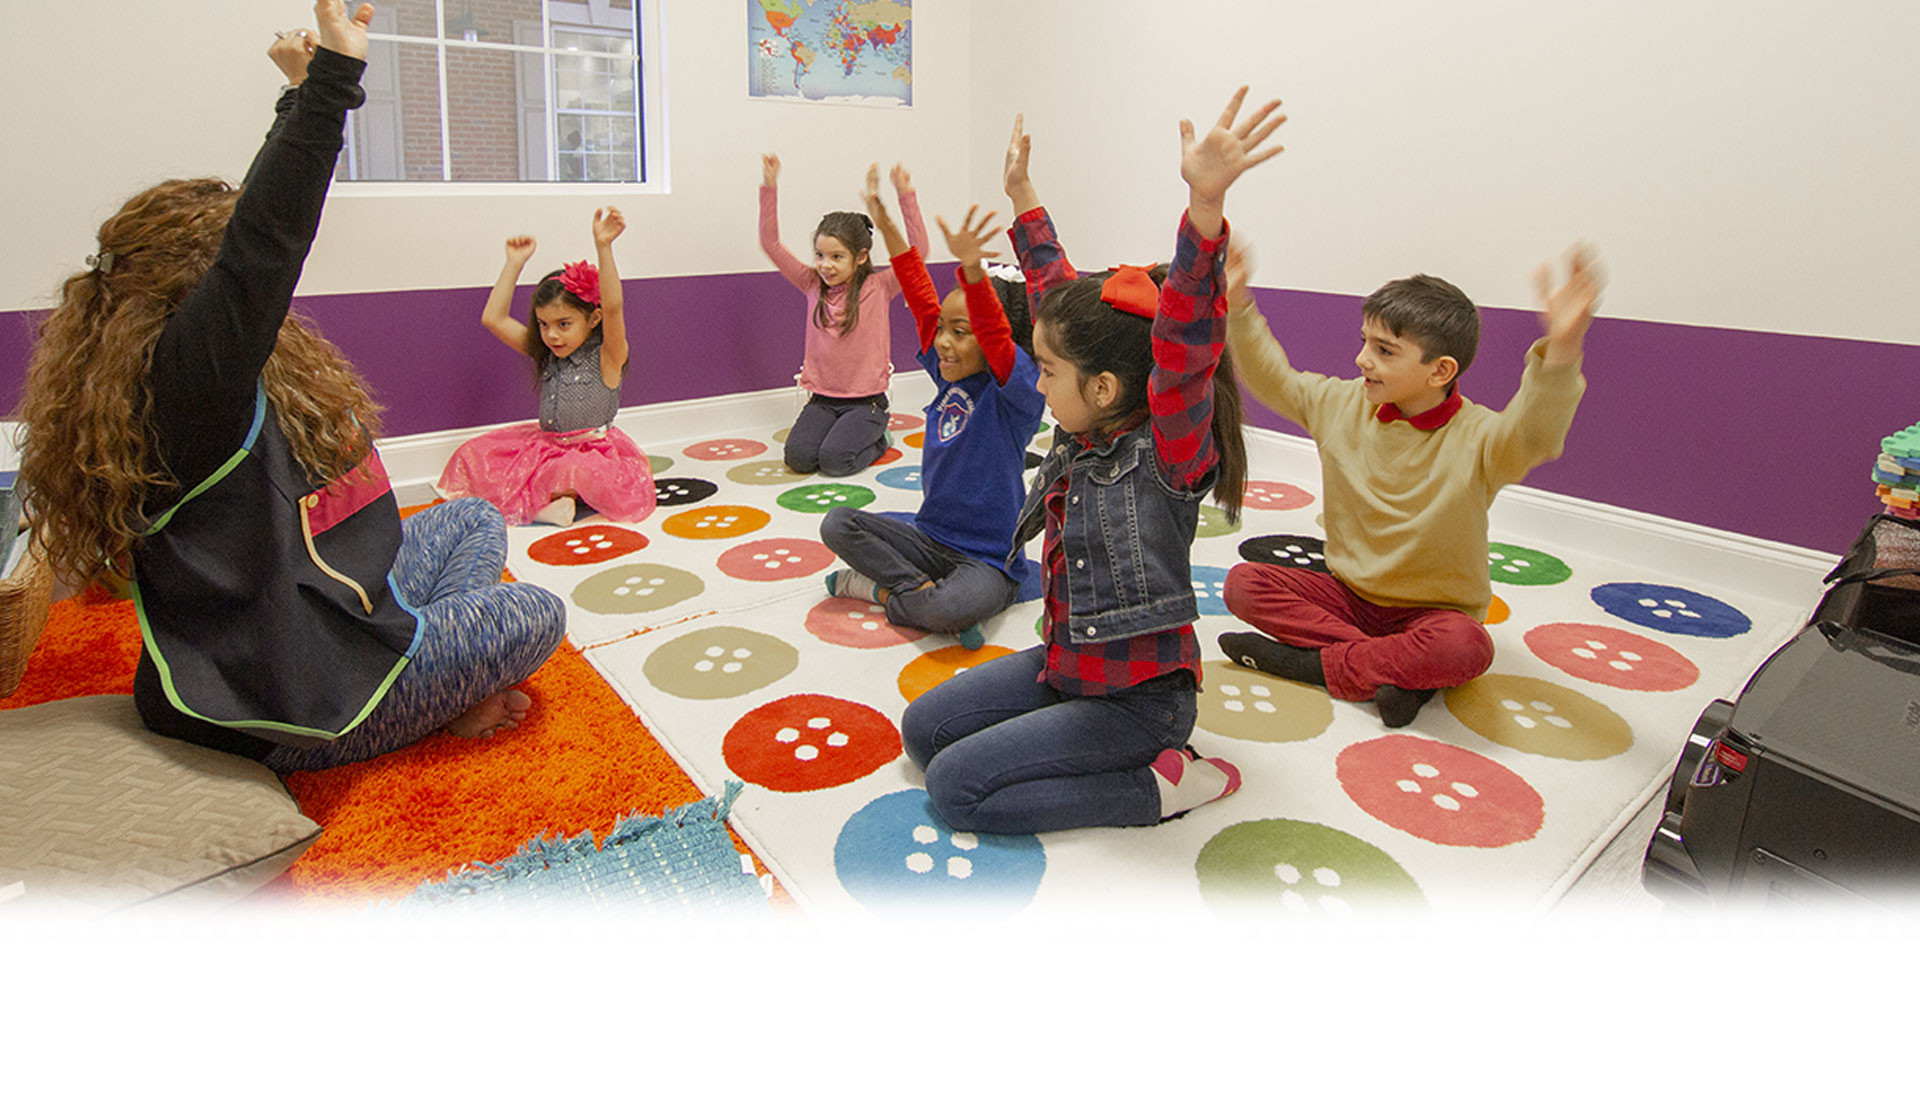 Spanish Learning Center for Kids in Alpharetta, Johns Creek & Milton GA. Full Immersion Spanish